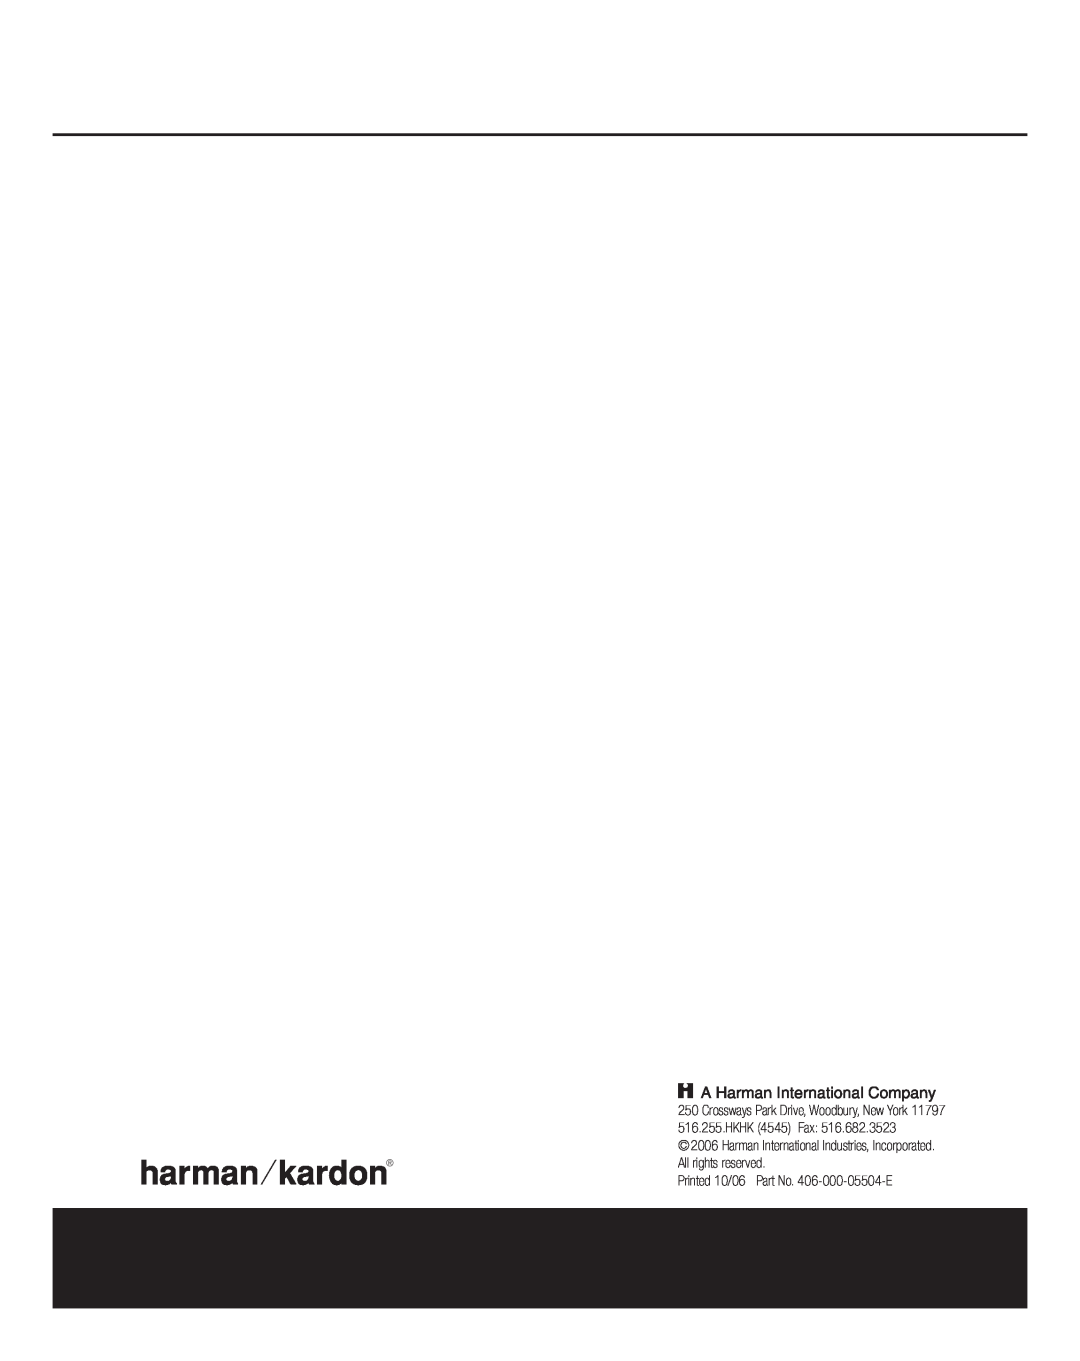 Harman-Kardon HKTS 18 owner manual HKHK 4545 Fax, All rights reserved, Printed 10/06 Part No. 406-000-05504-E 